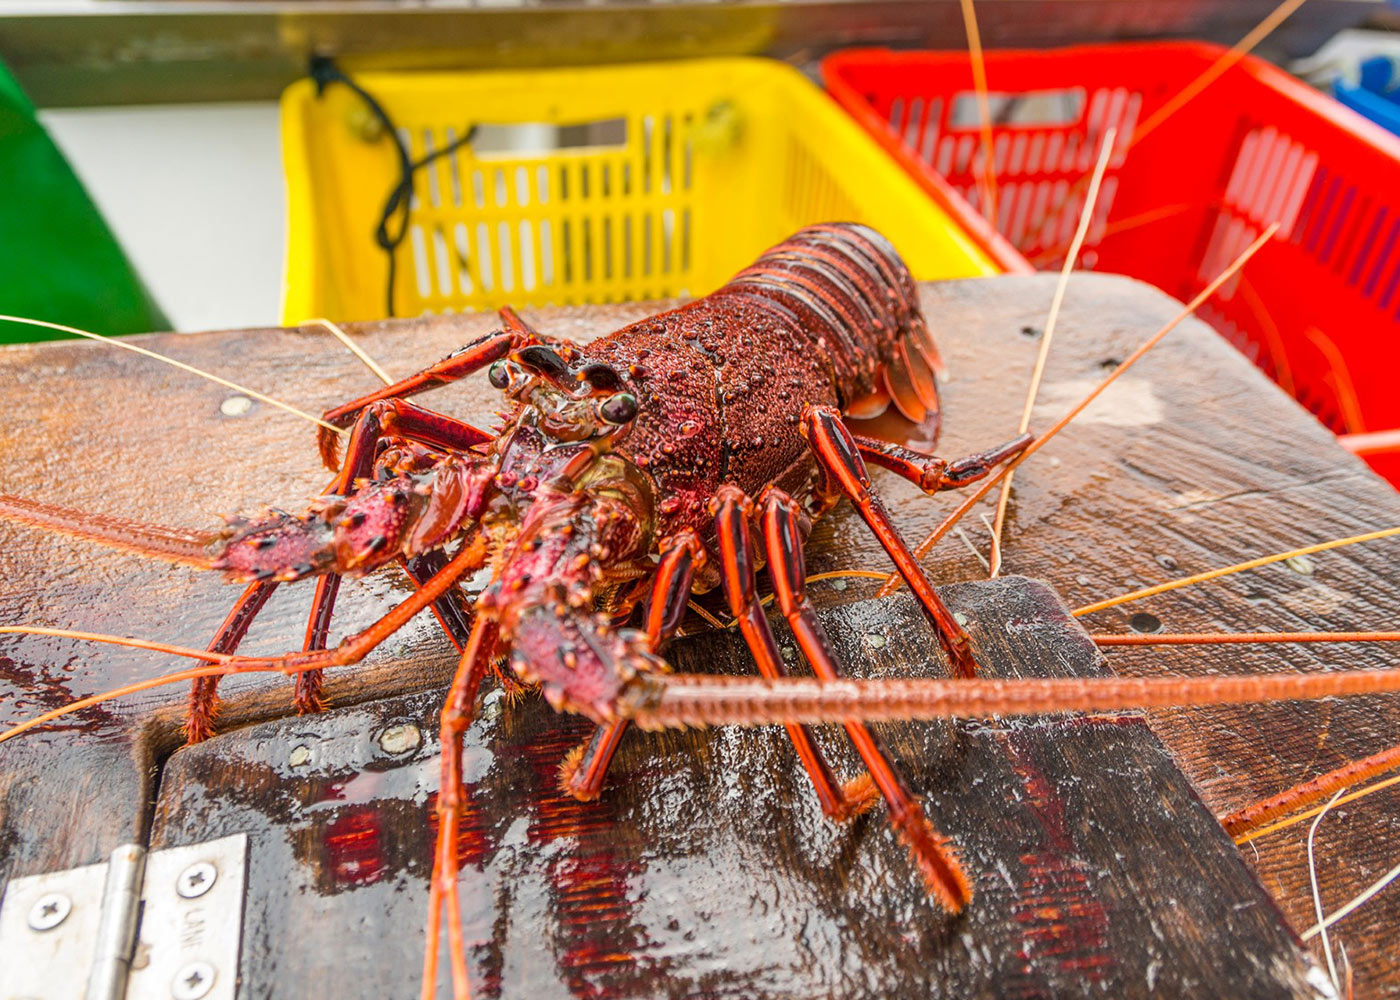 Western Australia Rock Lobster